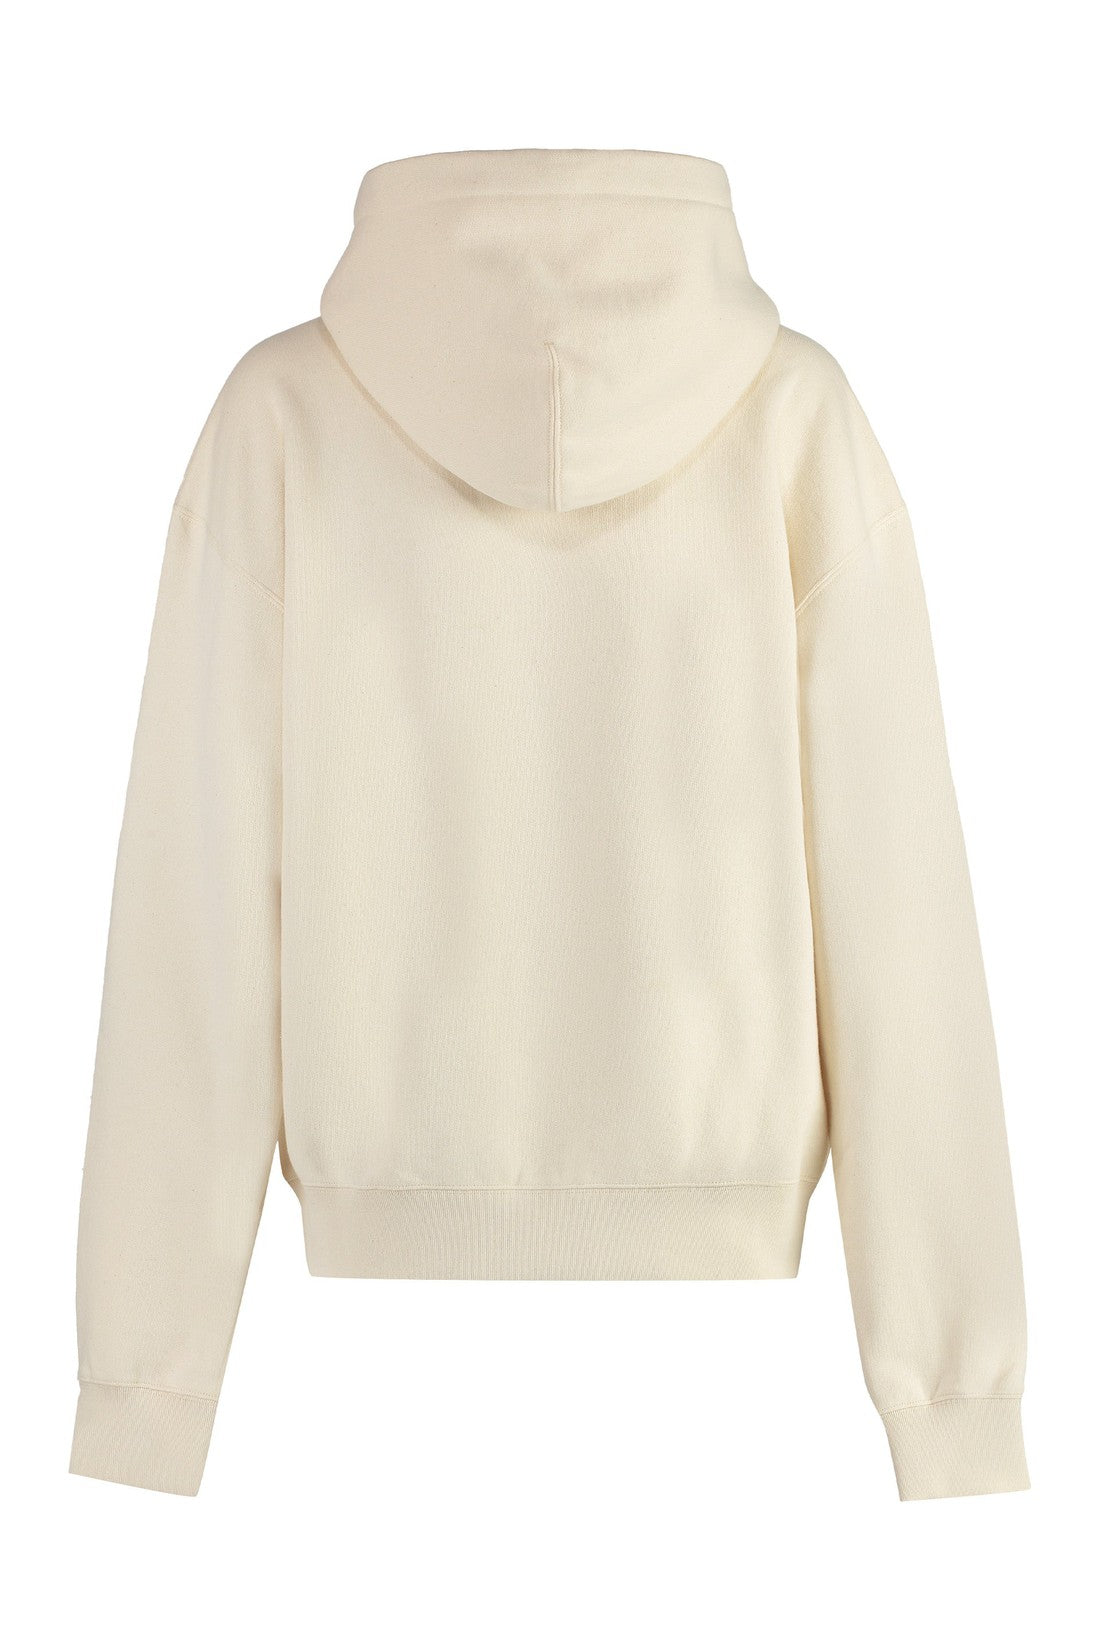 Jil Sander-OUTLET-SALE-Logo cotton hoodie-ARCHIVIST